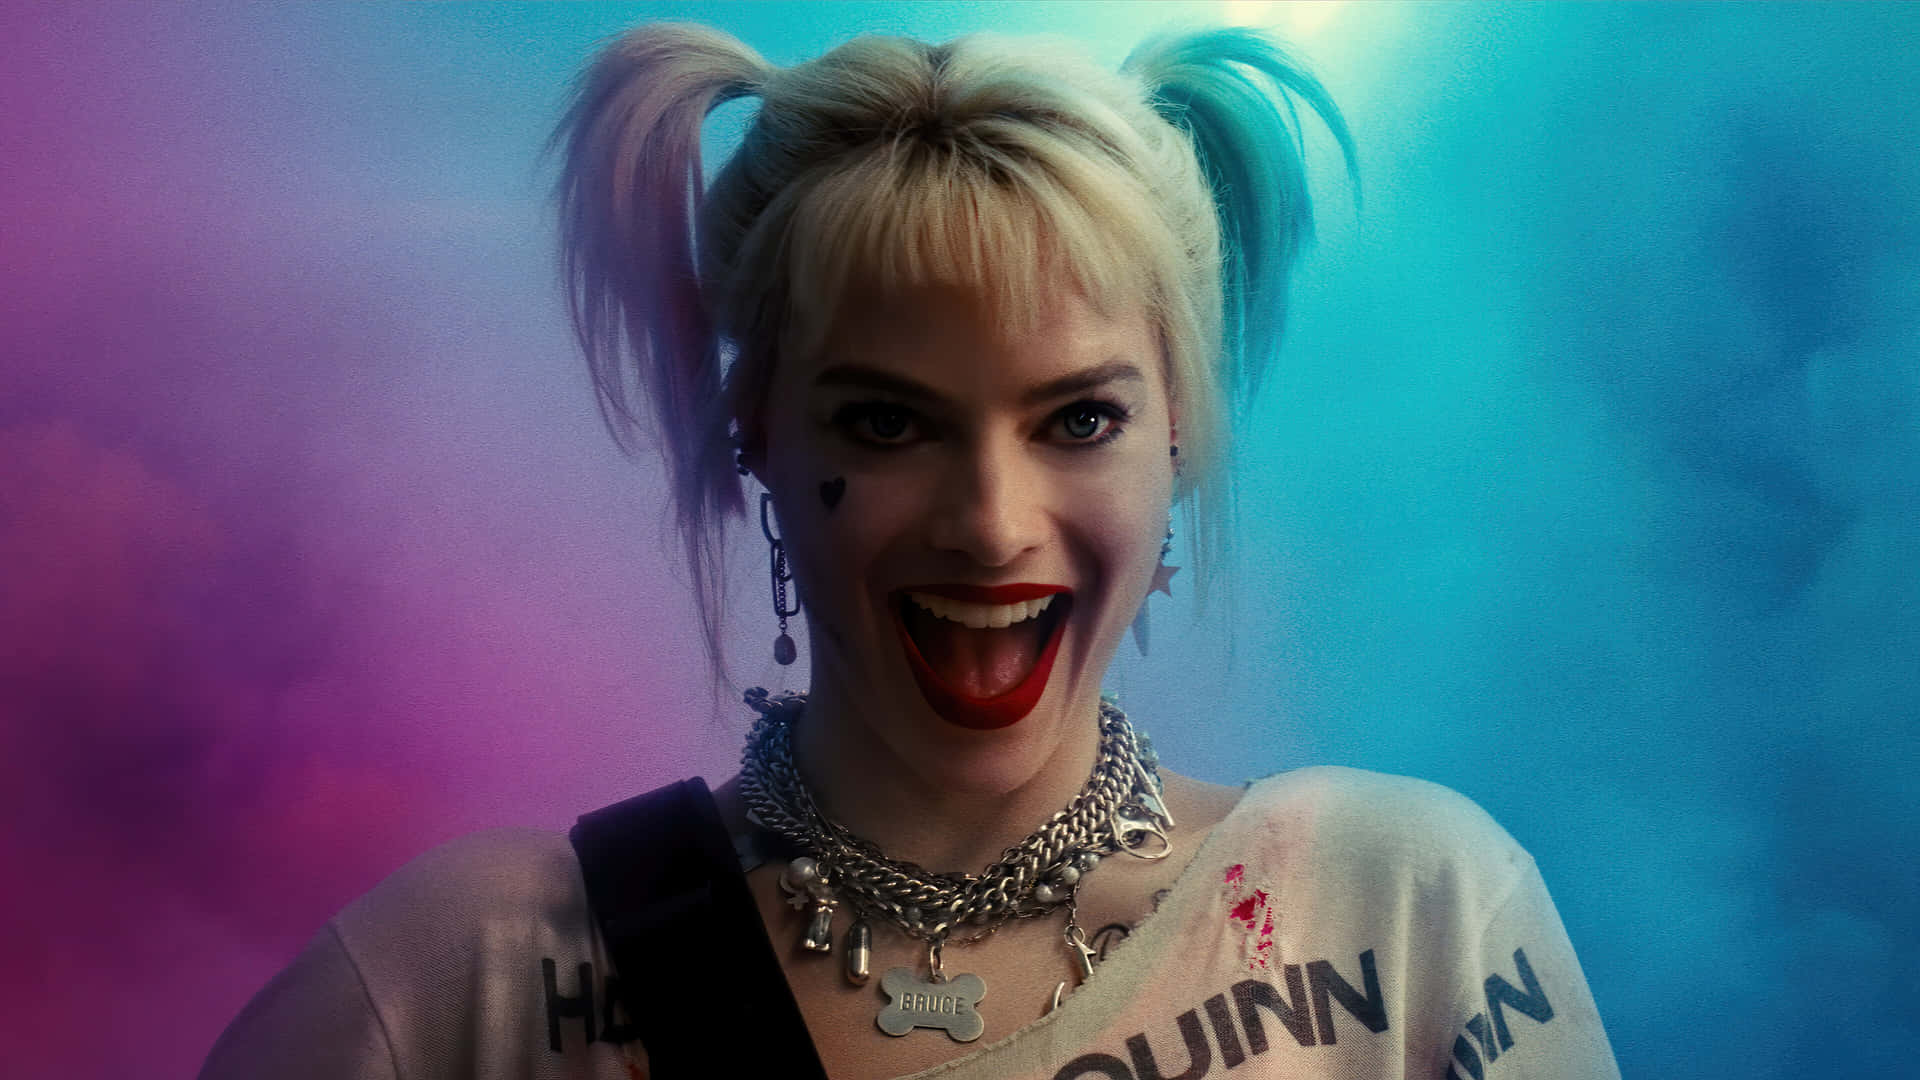 Margotrobbie Rockt Ihre Charakteristische Harley Quinn Frisur Auf Diesem Fesselnden Foto. Wallpaper